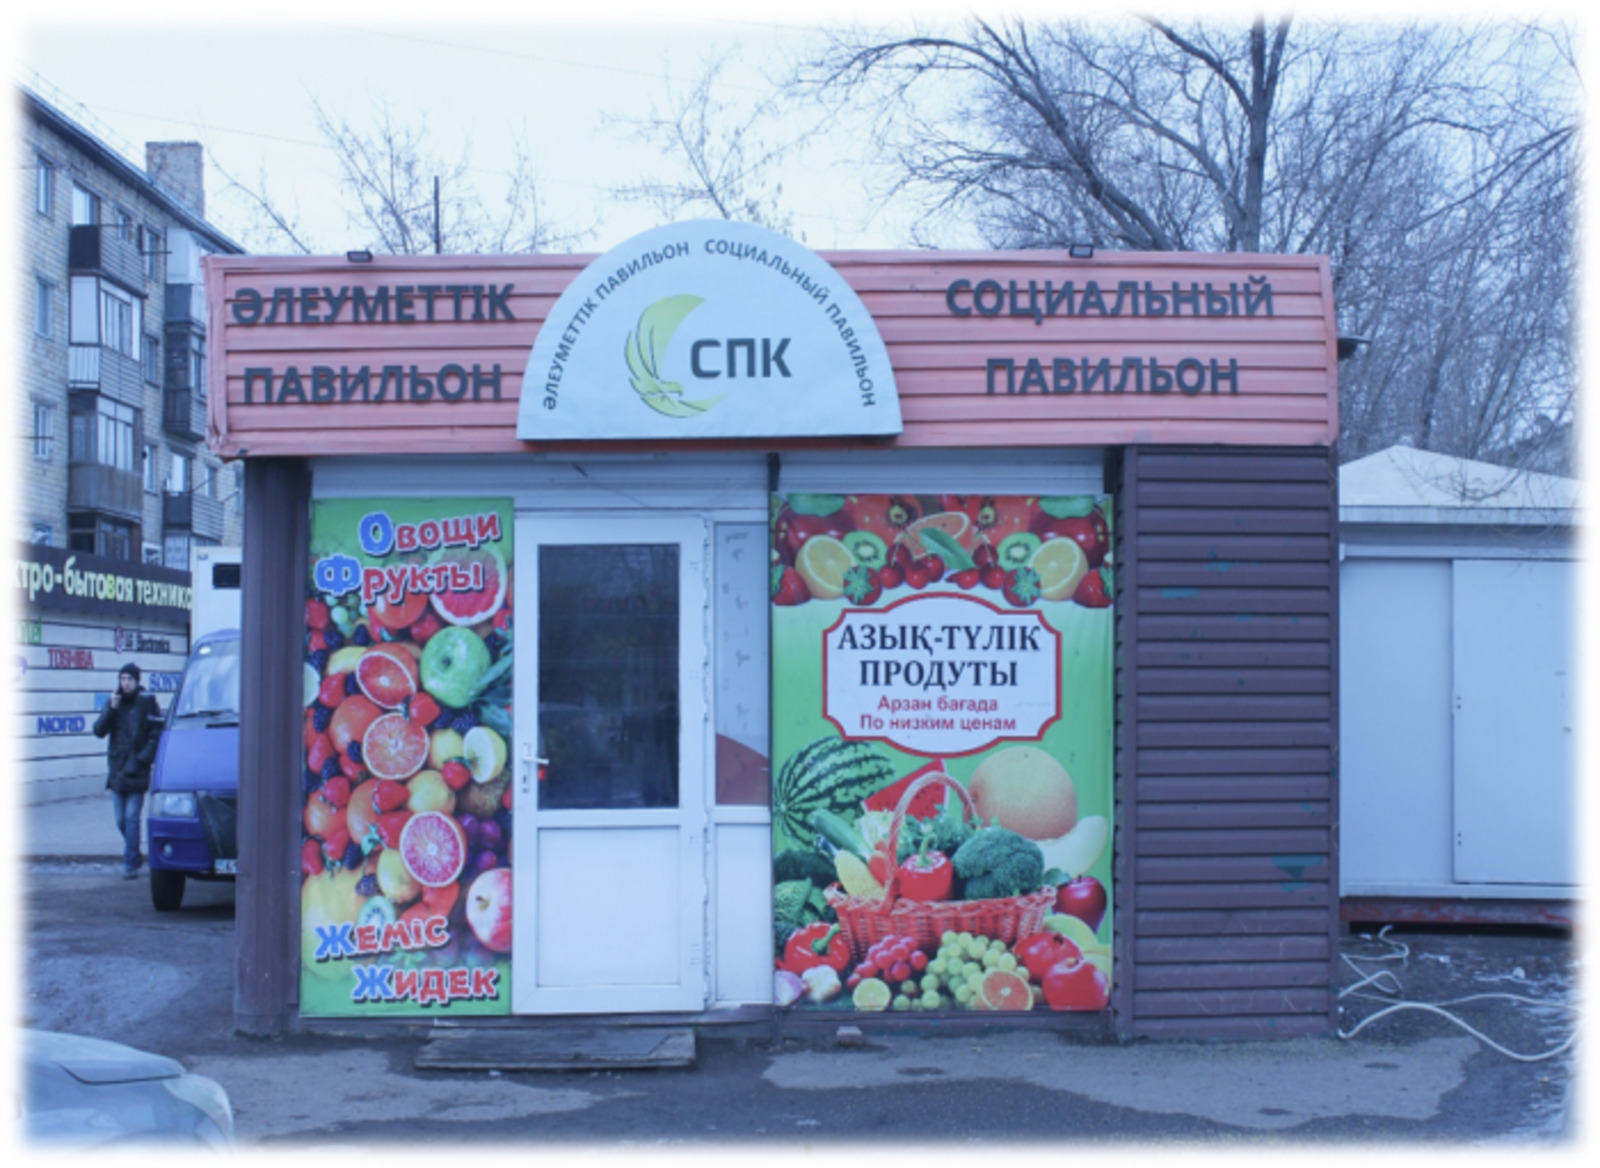 Зелинский көшесі 26/3 мекен-жайында орналасқан «Пришахтинск»әлеуметтік павильоны